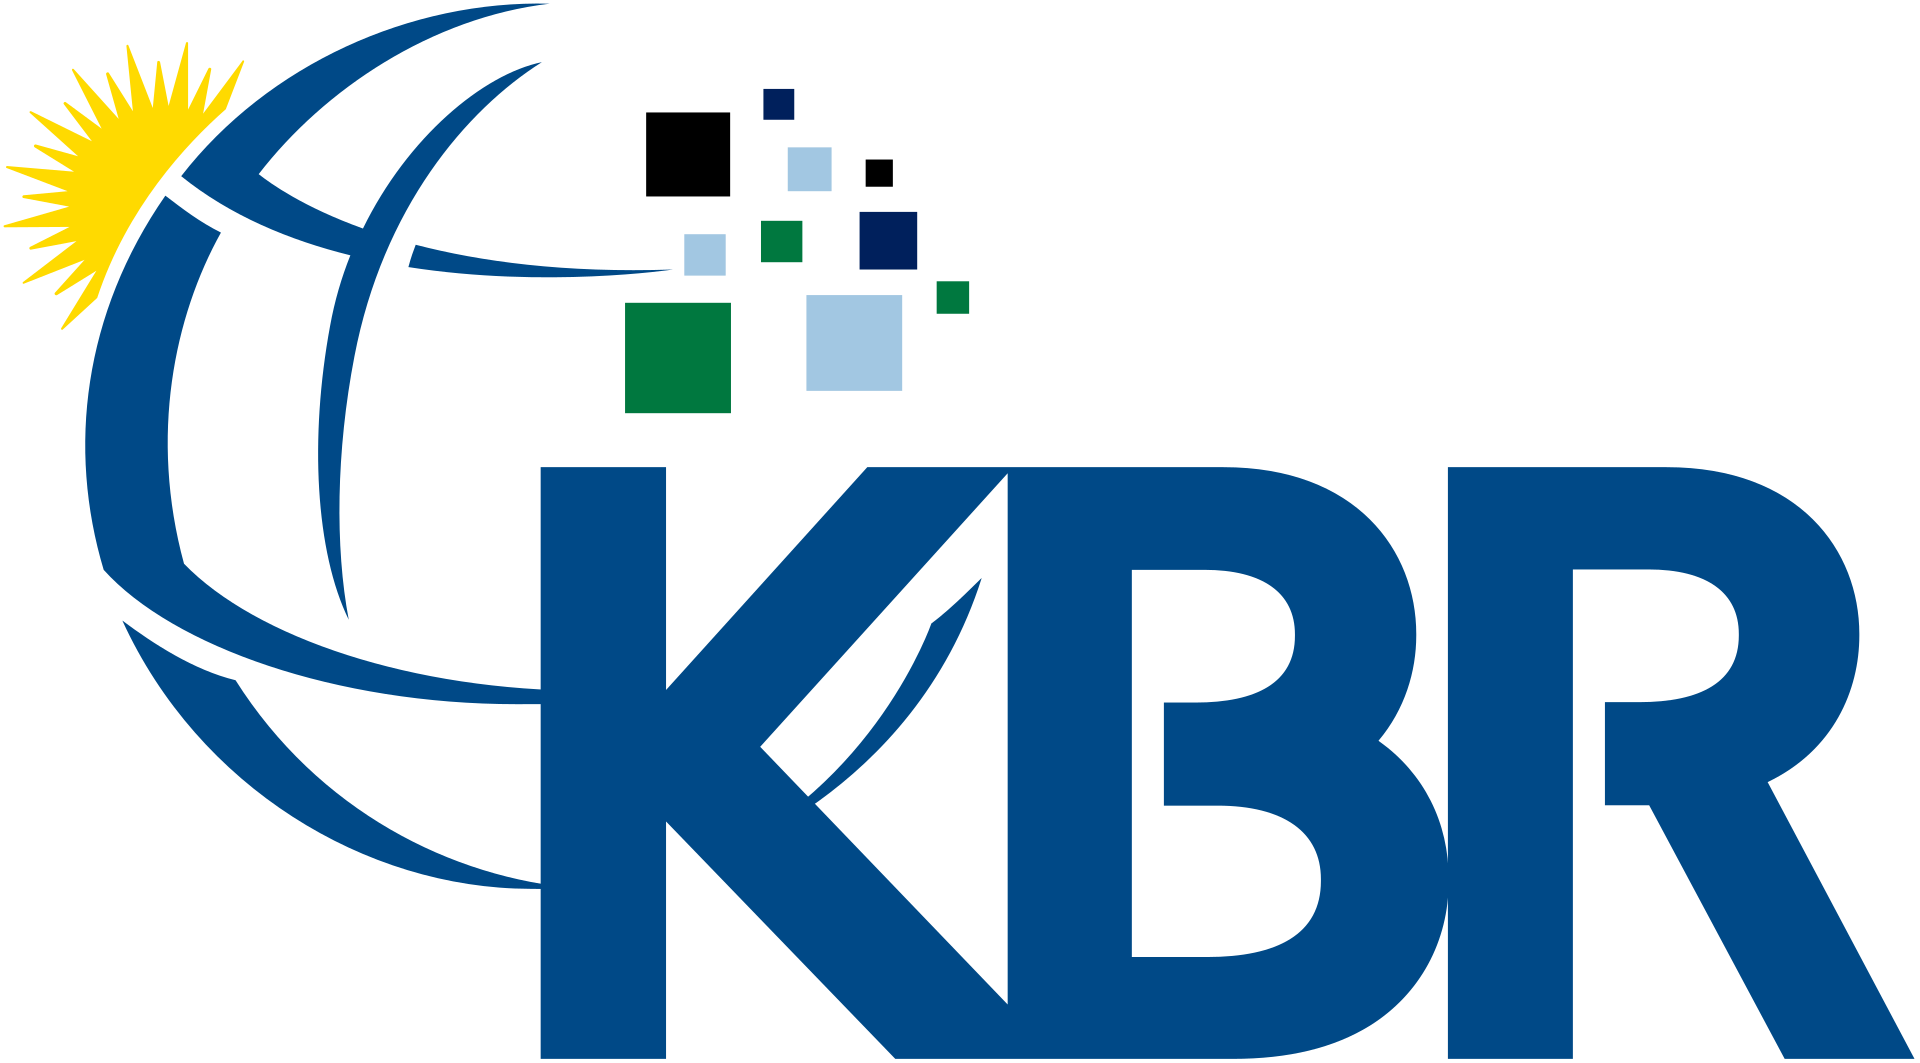 KBR公司. 徽标，按来源(WP:NFCC#4)，合理使用，http://en.维基百科.org/w/index.php?curid = 61420148 "